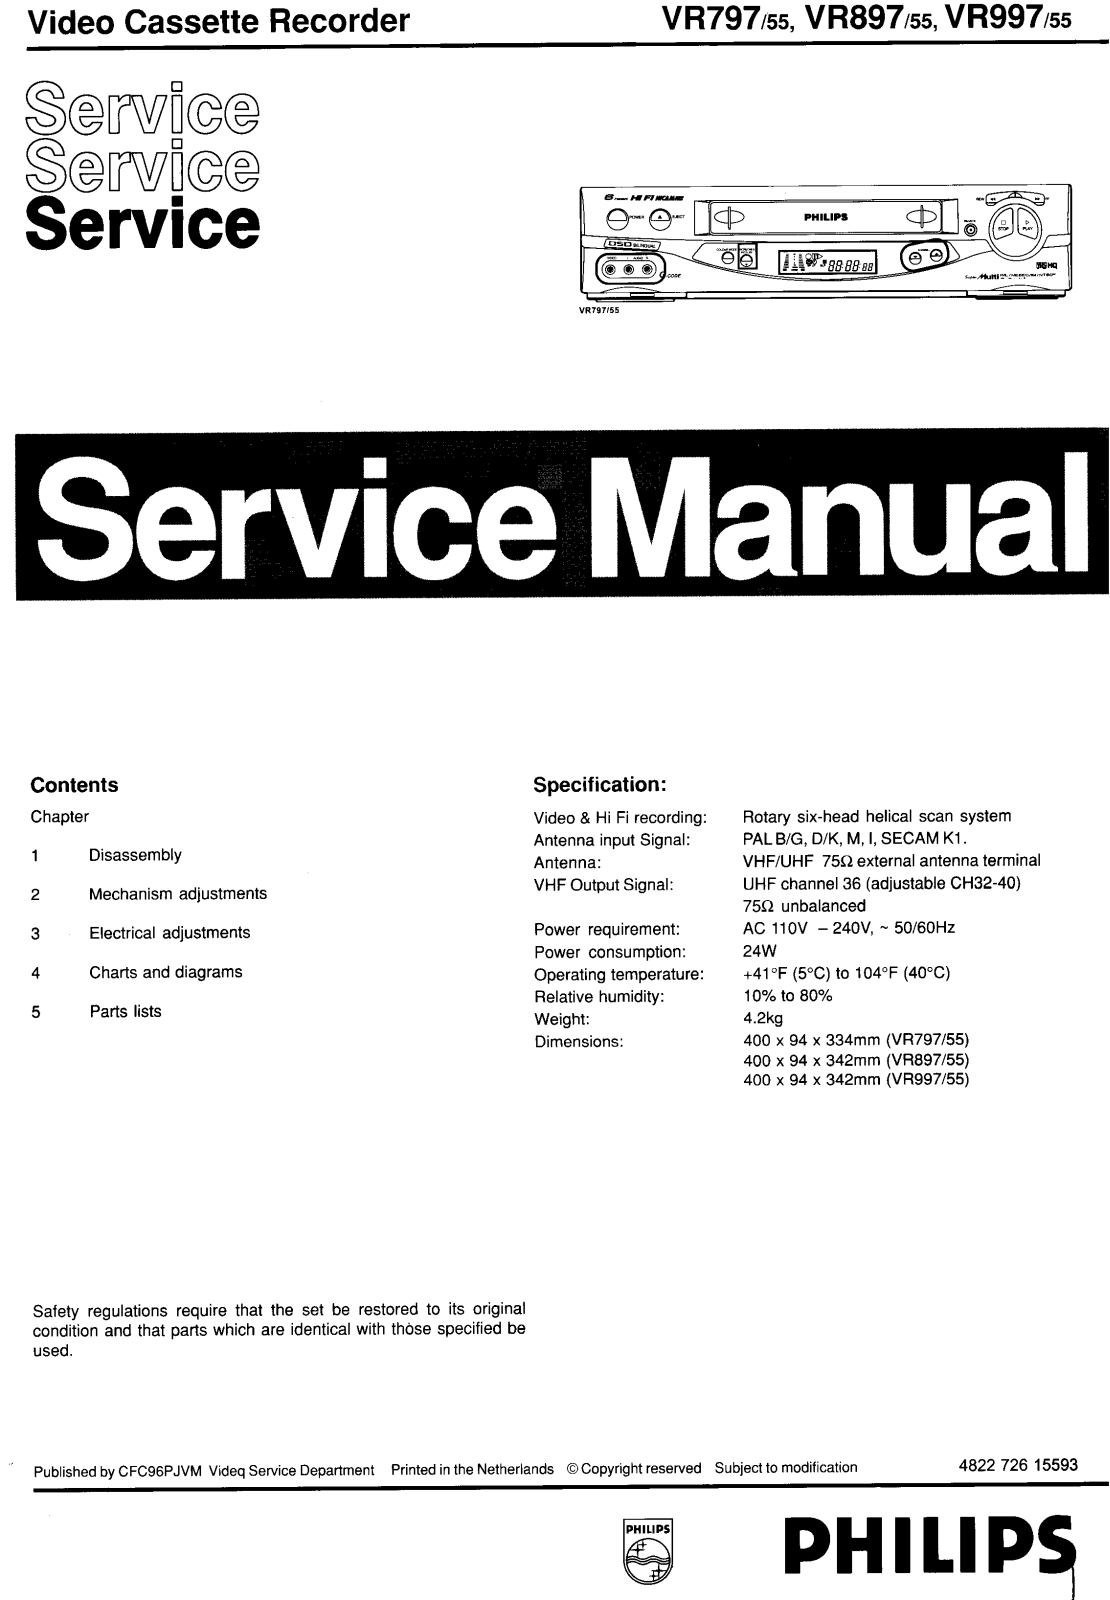 PHILIPS VR797, VR897, VR997 Service Manual